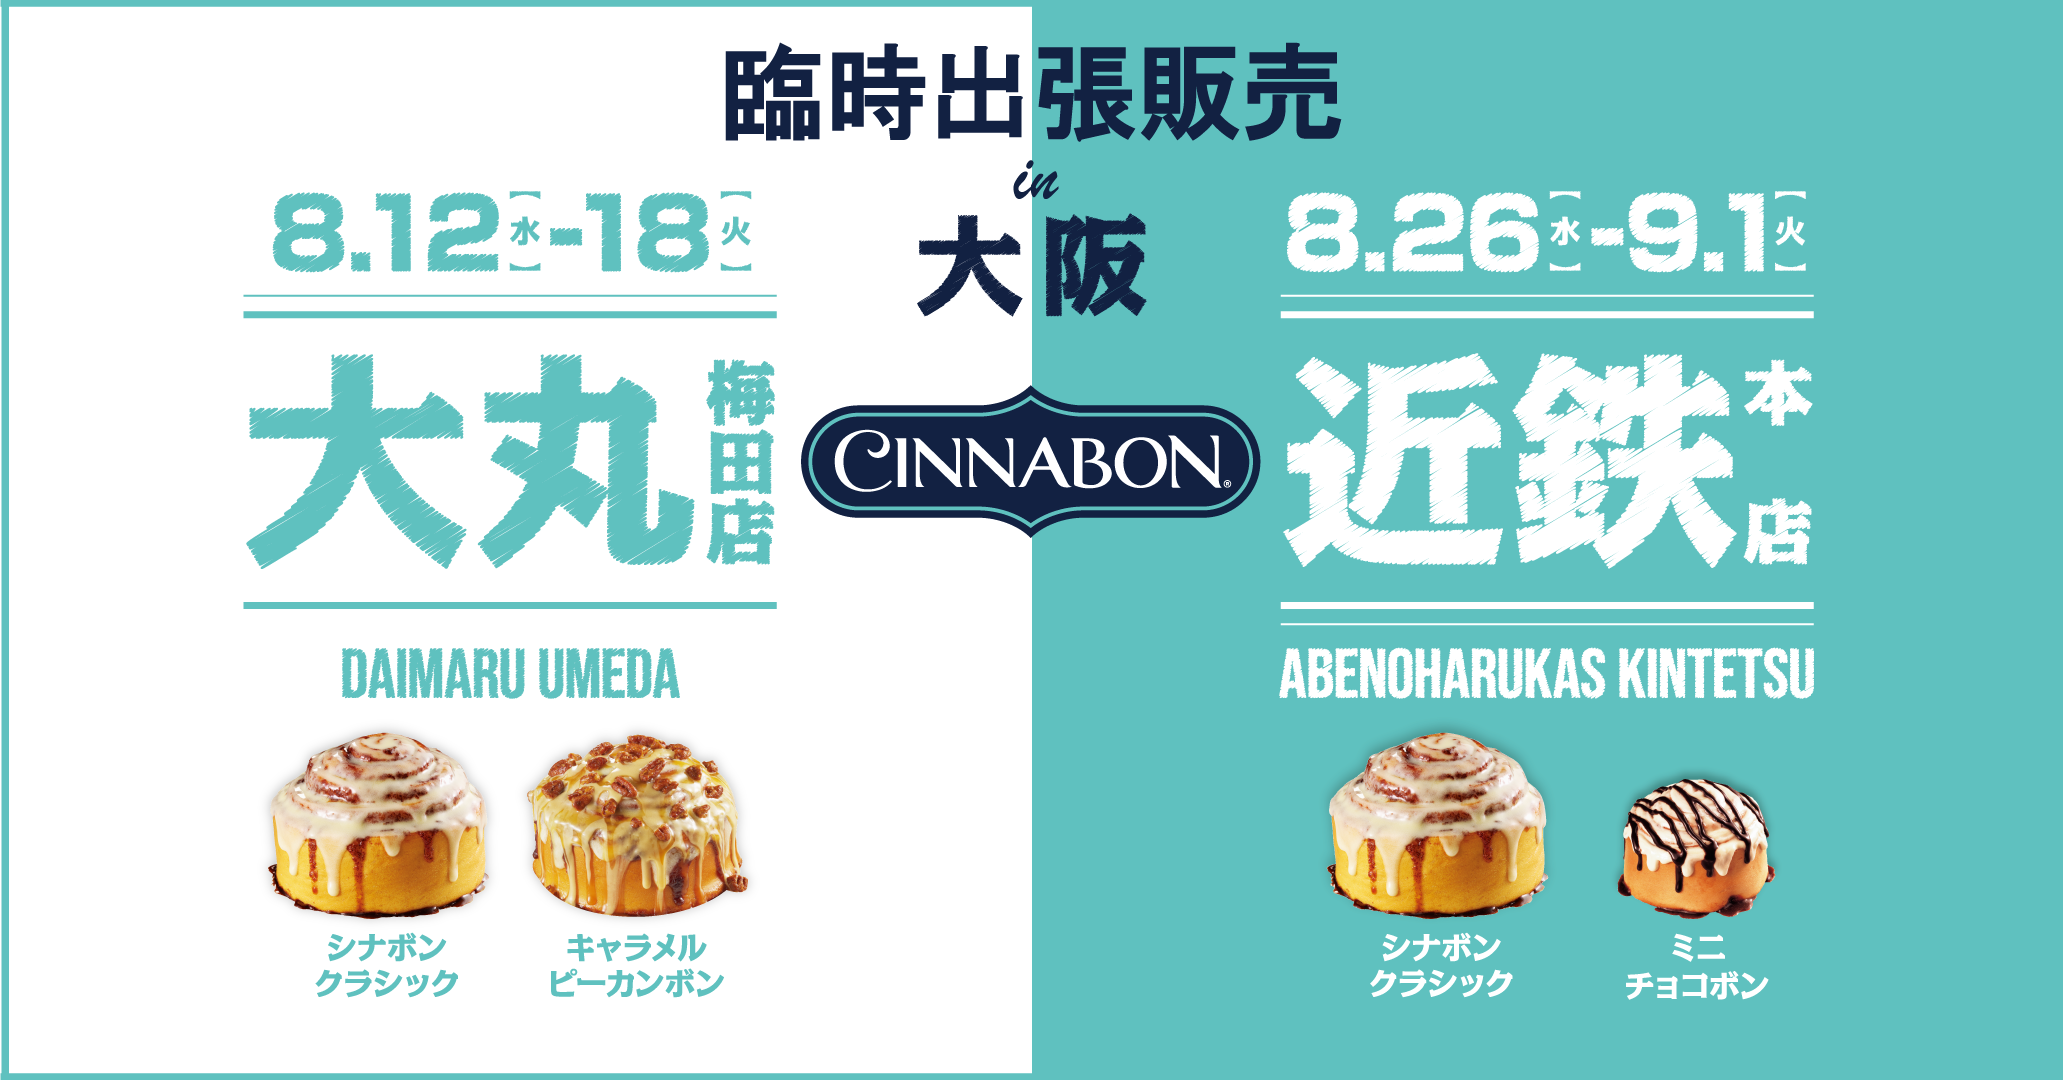 シナモンロール専門店 シナボン が大阪での夏休み臨時出張販売を開催 ｊｒ九州ファーストフーズ株式会社のプレスリリース